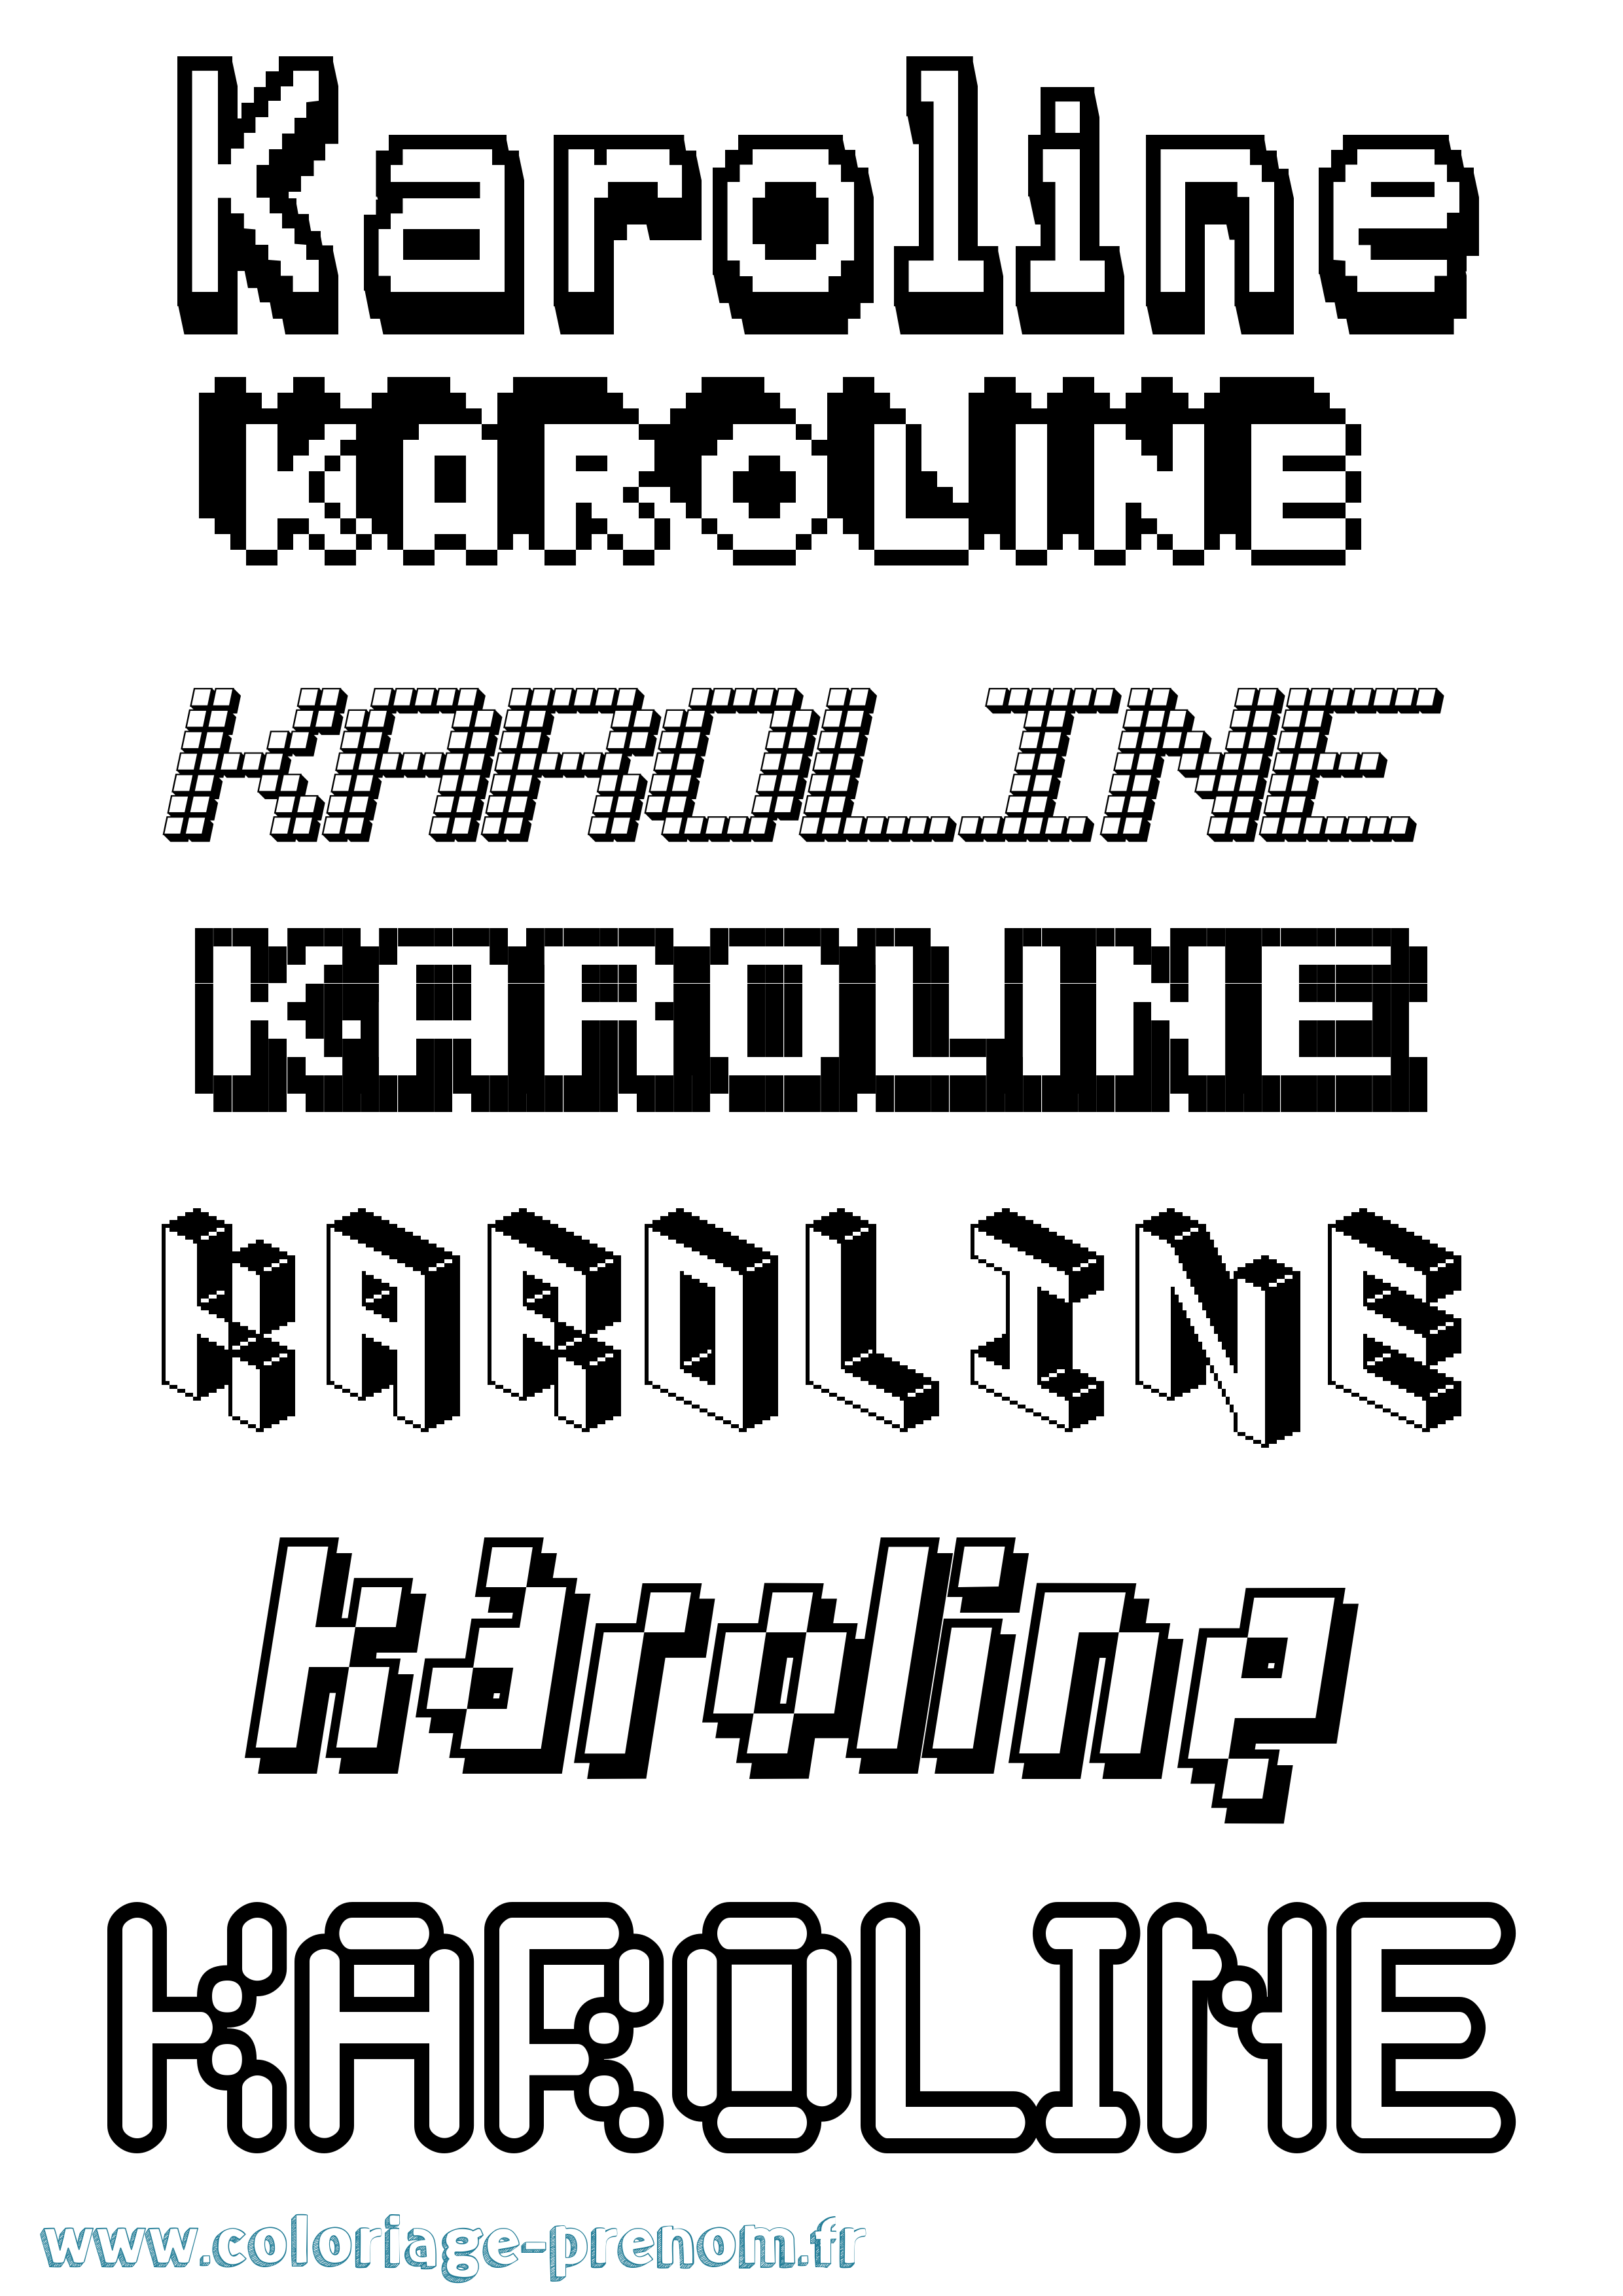 Coloriage prénom Karoline Pixel